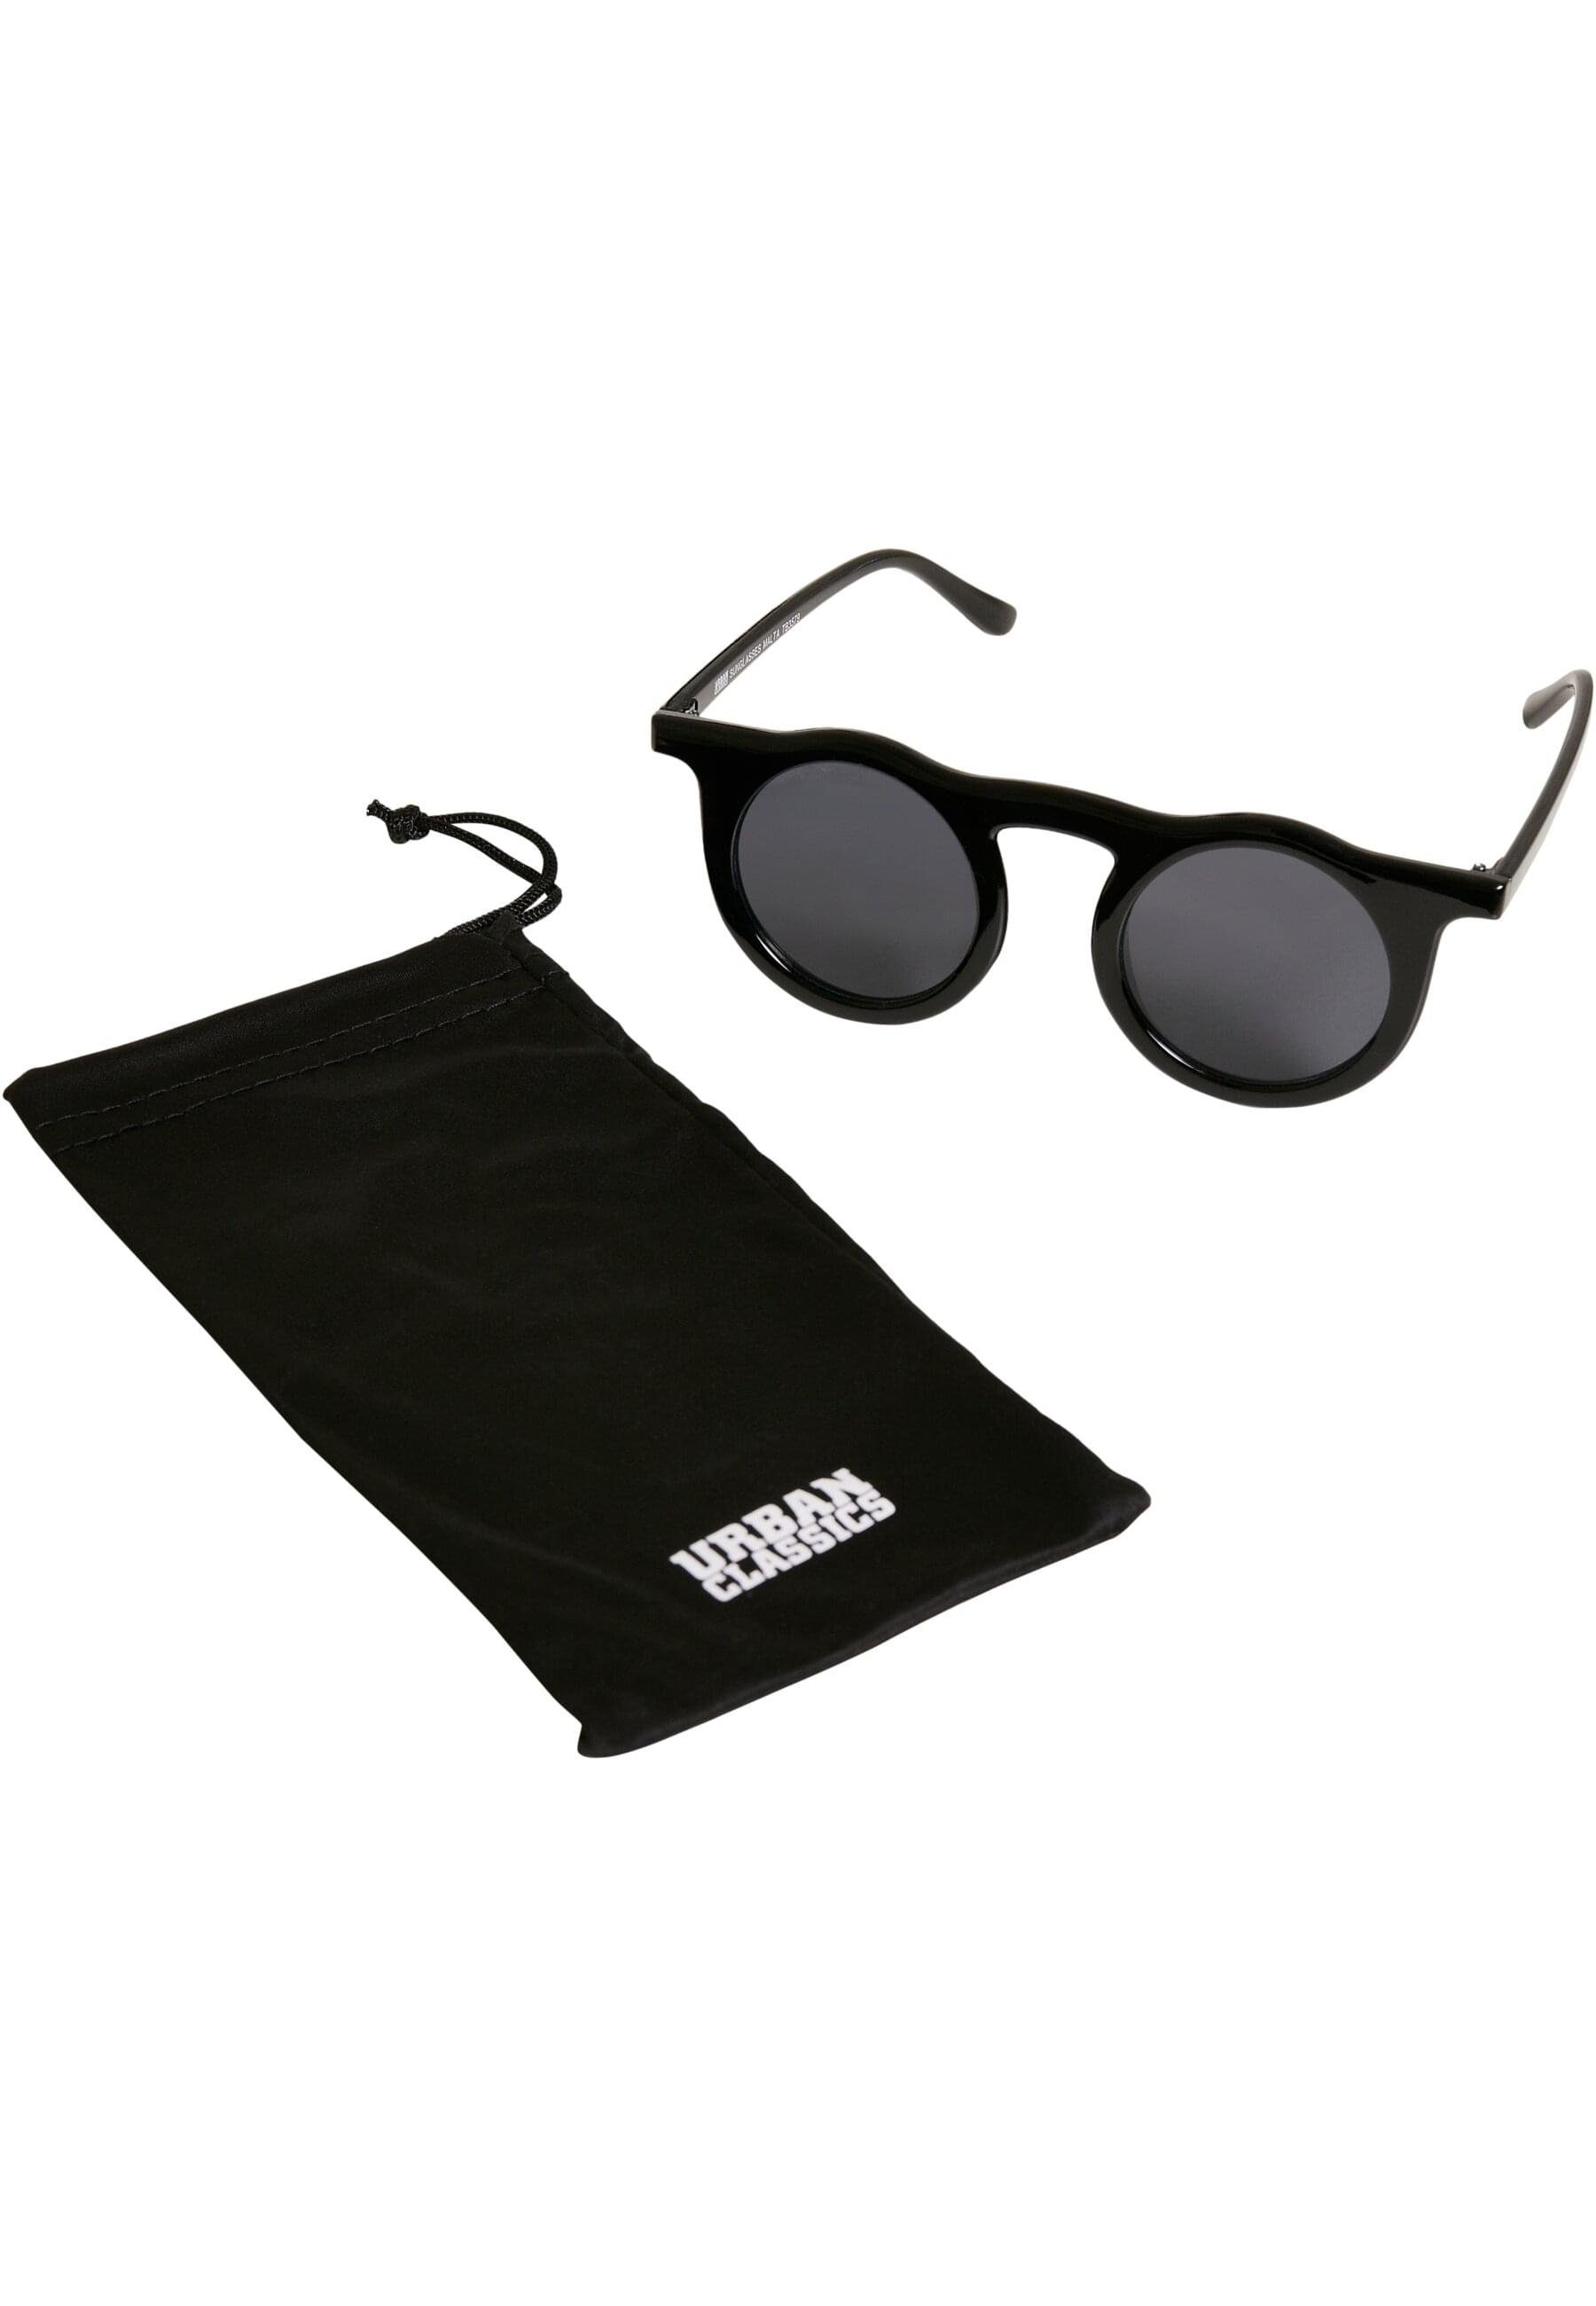 Sunglasses URBAN Unisex Sonnenbrille Malta CLASSICS